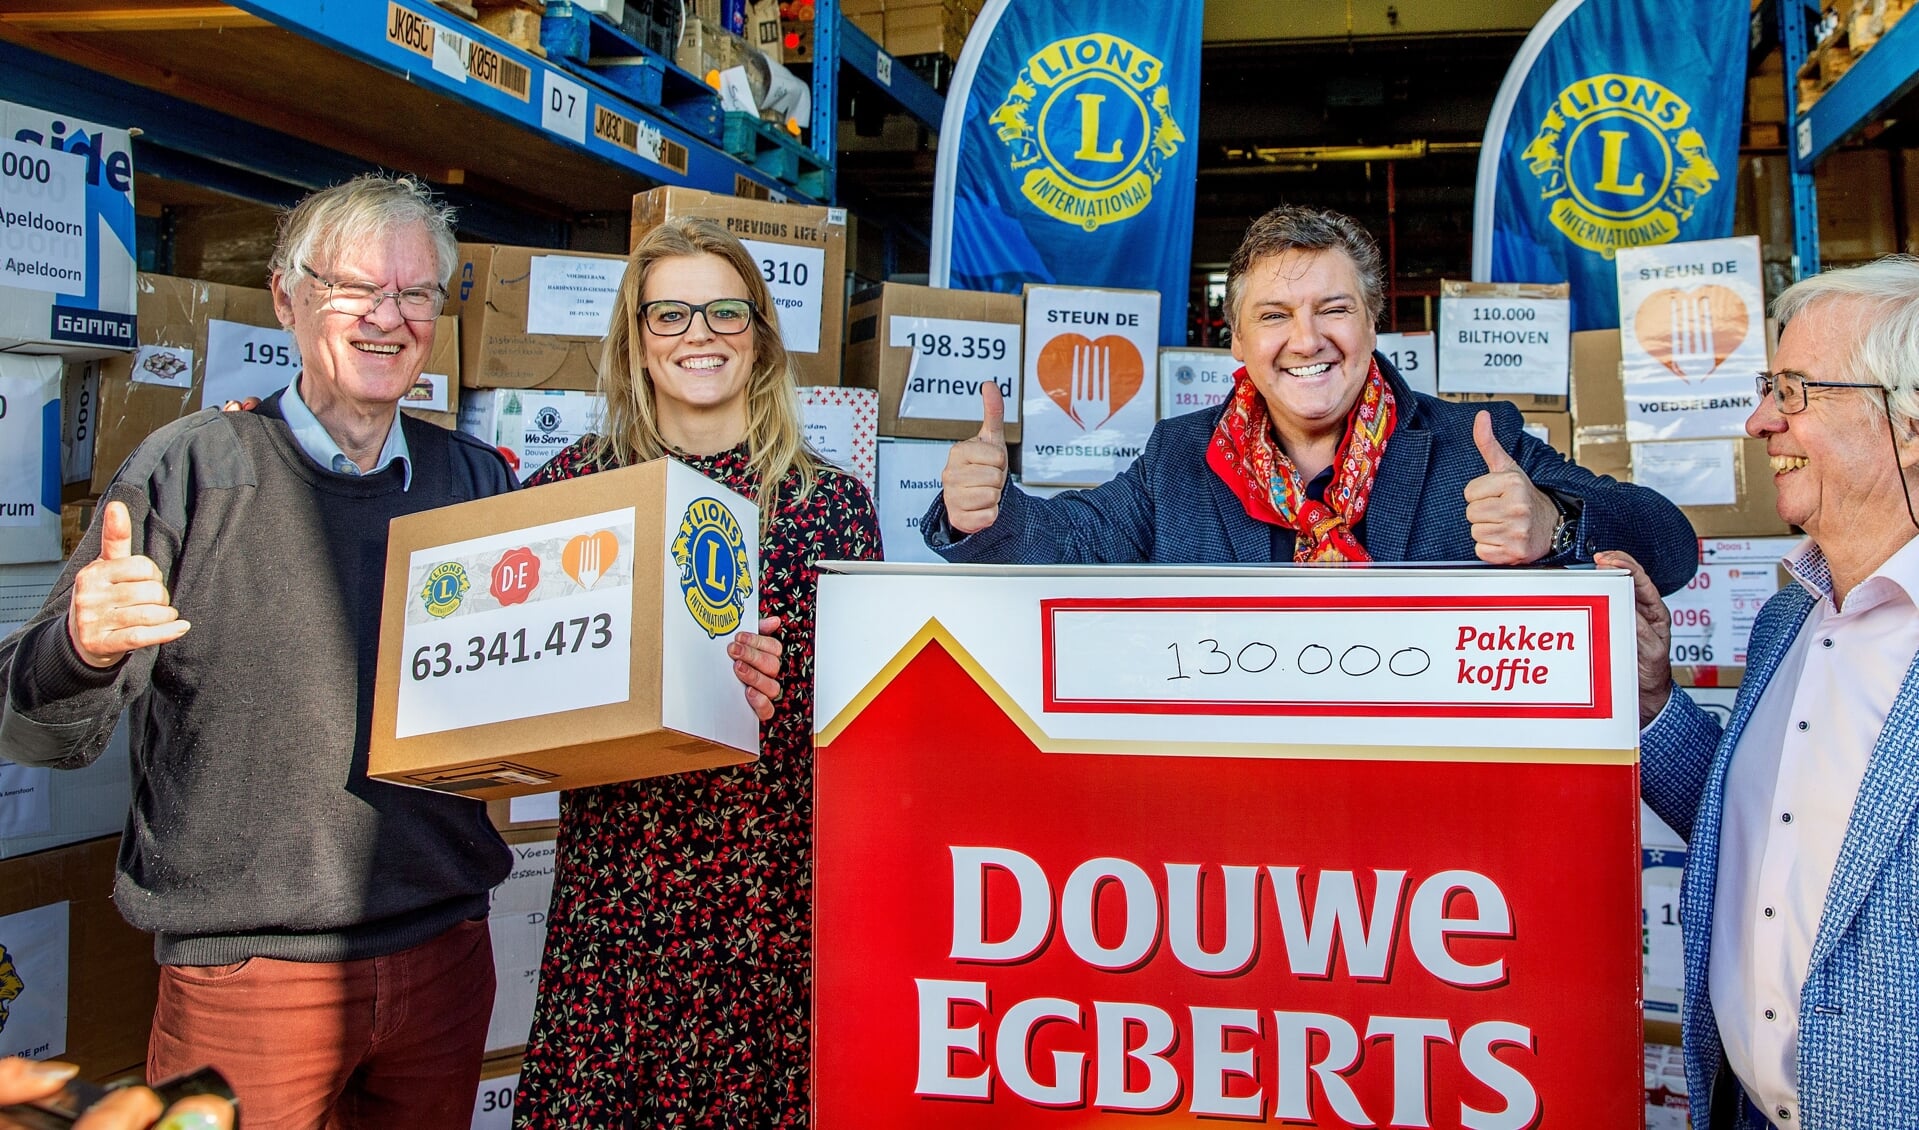 Overhandiging van 1.300.000 pakken koffie aan René Froger, landelijk ambassadeur van Voedselbanken Nederlandnk ‘Goed Ontmoet’)